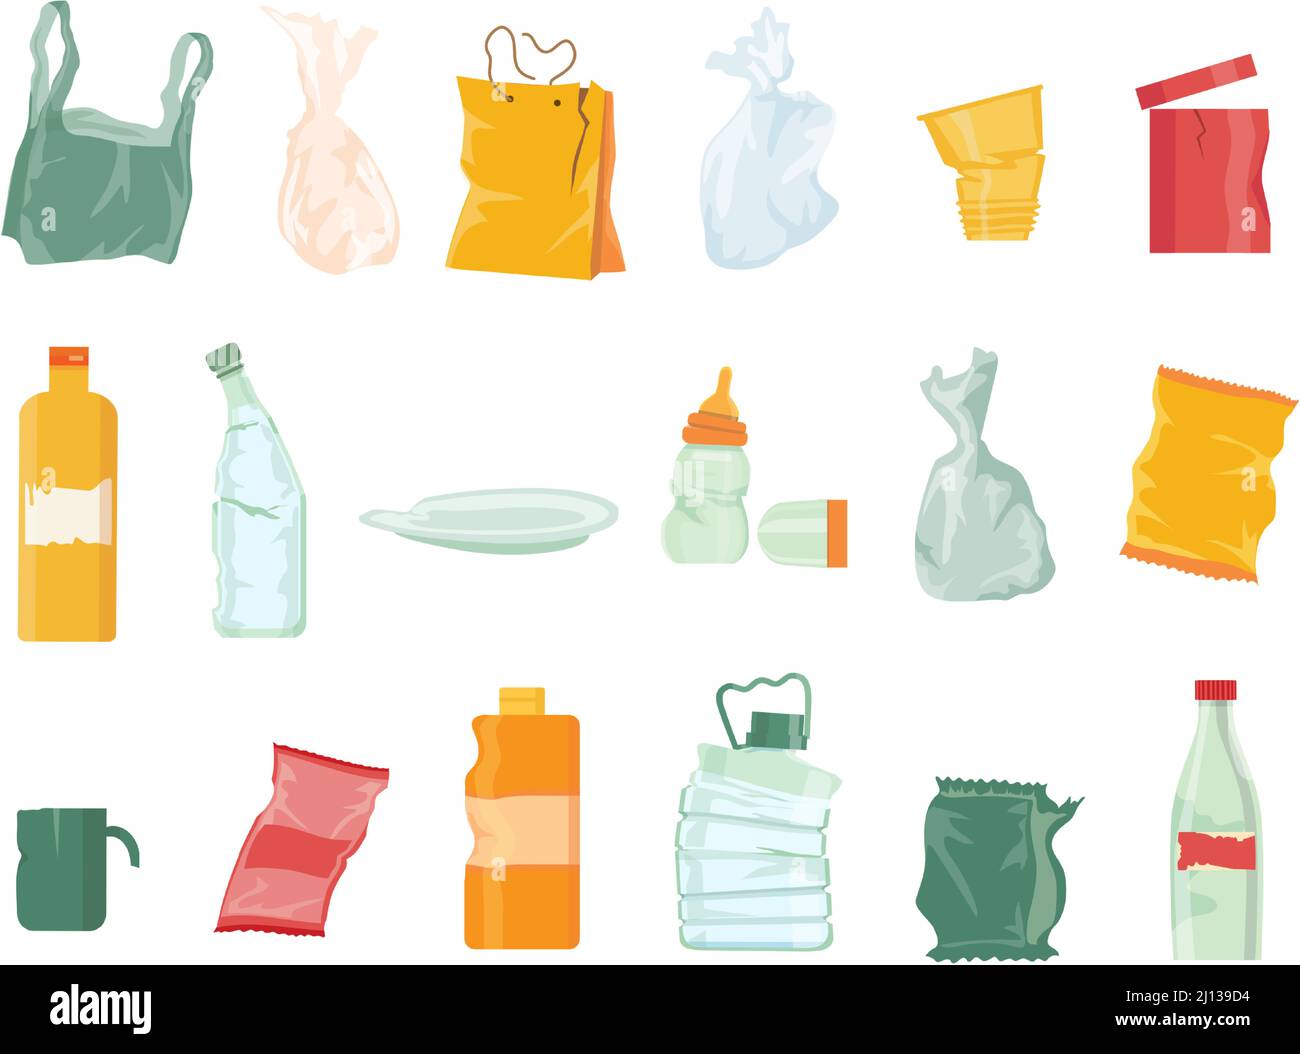 Plastikmüll Verschmutzung, Taschen, Flaschen, Einweg-Geschirr und Verpackung. Sortieren von Müll und Recycling von Kunststoffabfällen. Zeichentrickfilm-Trash-Vektor eingestellt Stock Vektor